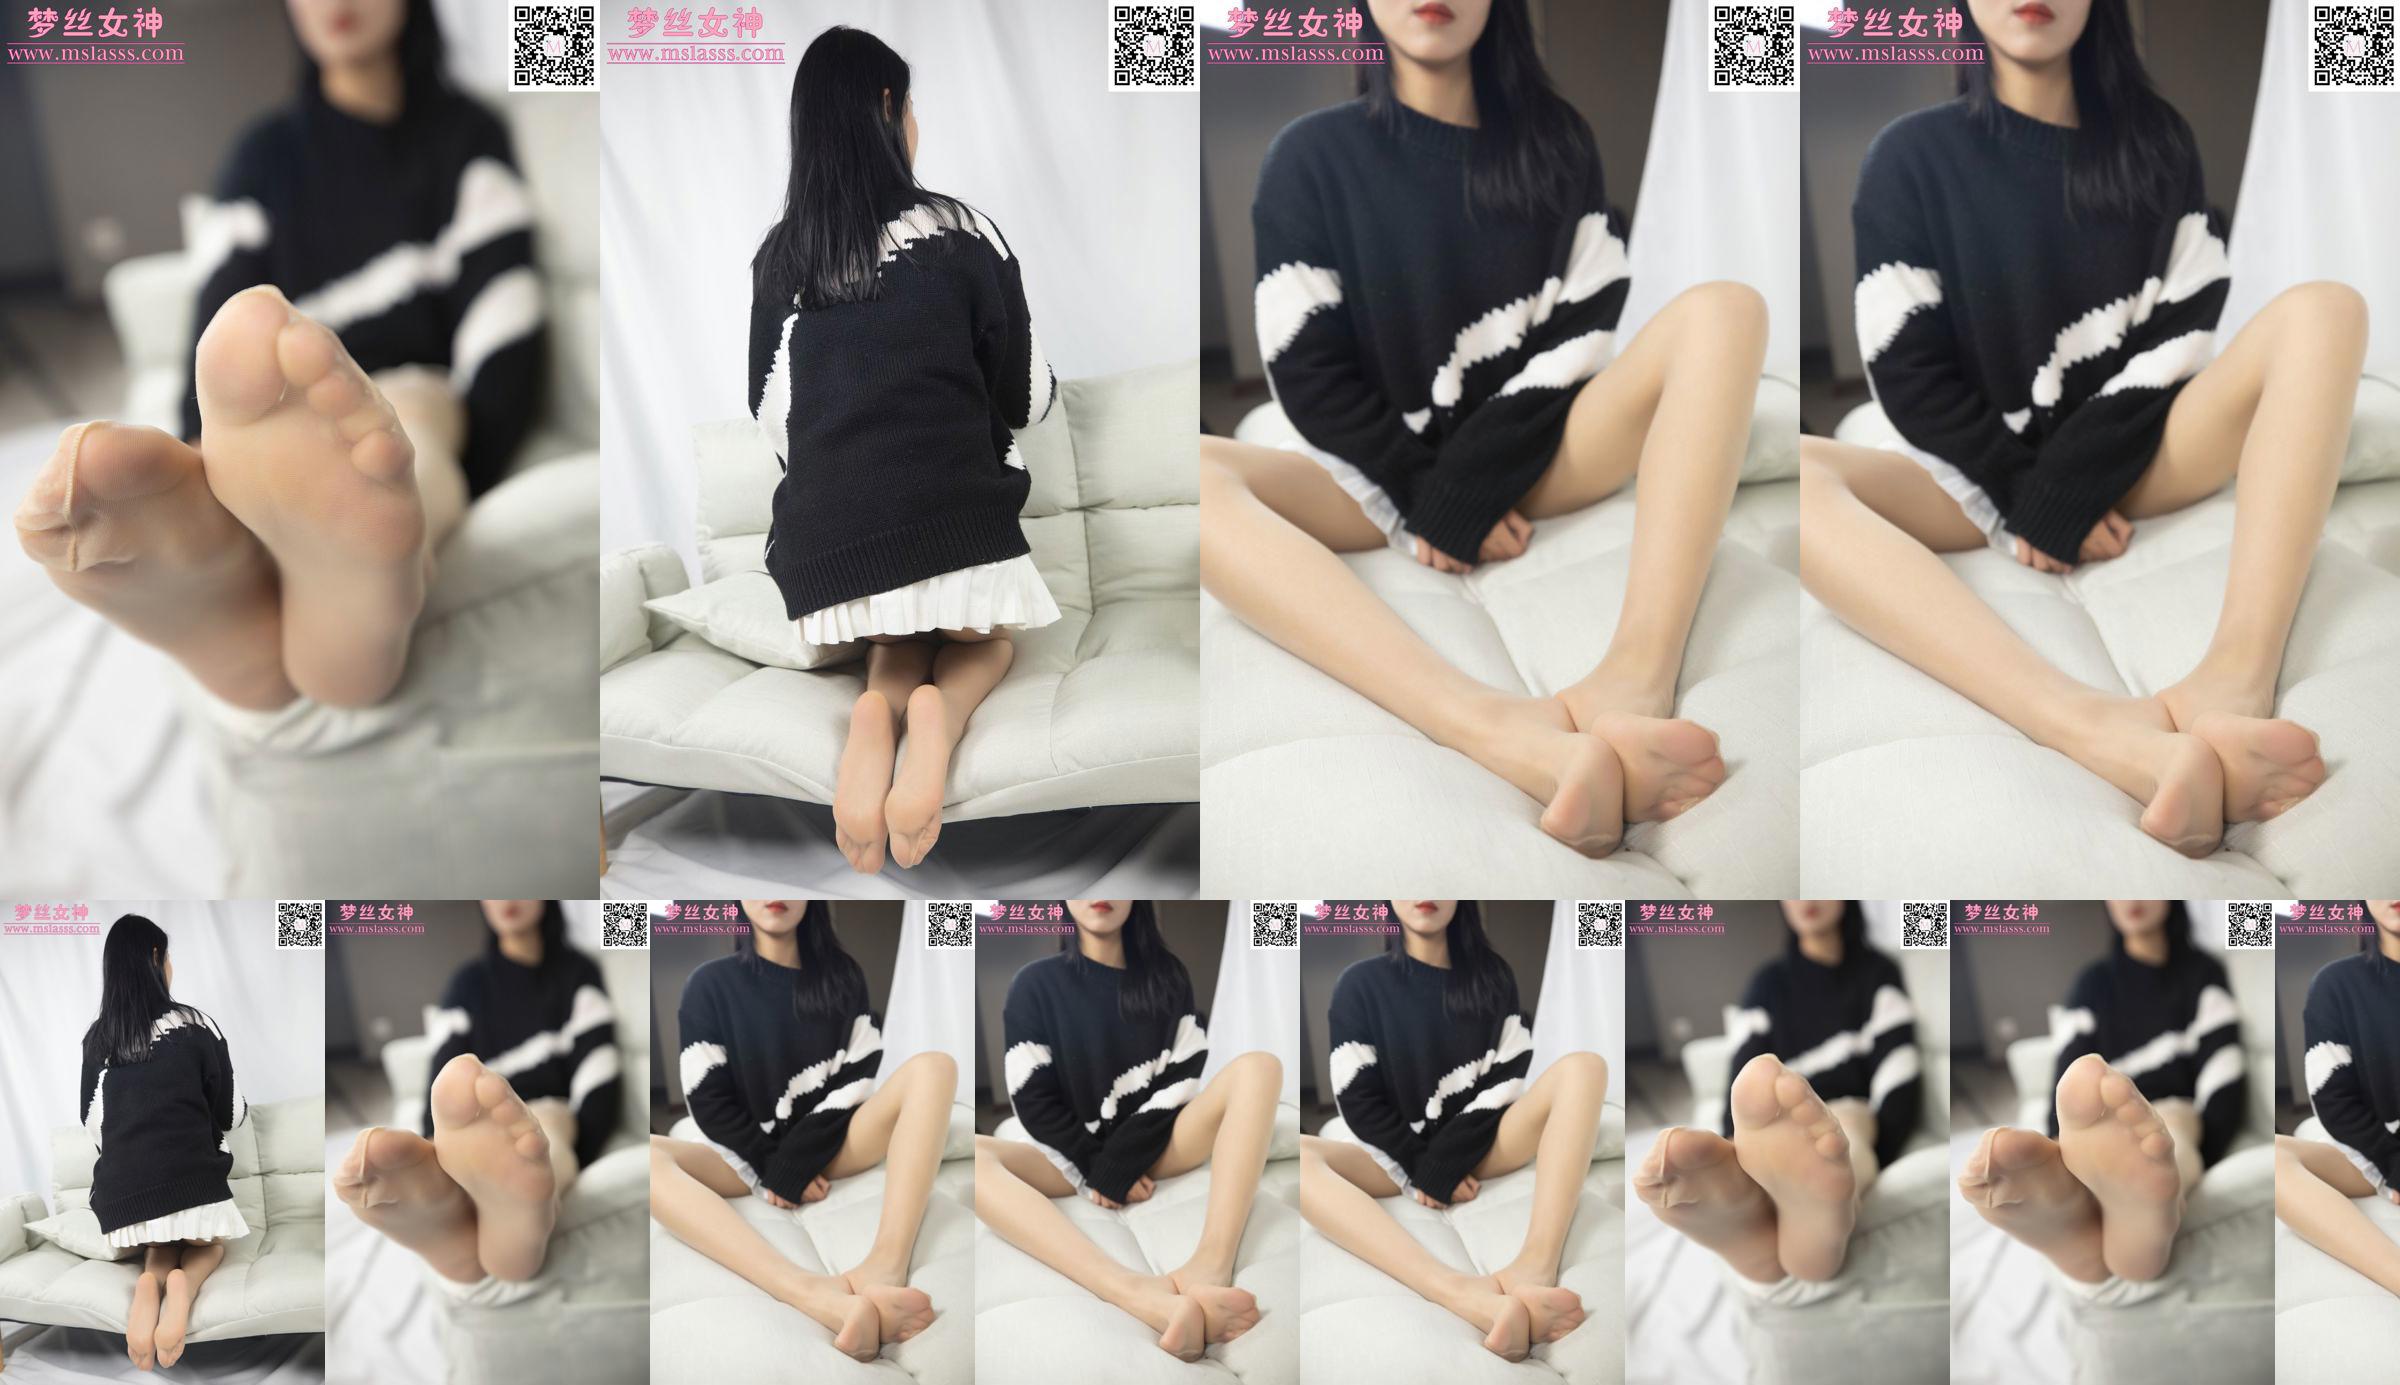 [꿈의 여신 MSLASS] Xiaomu의 스웨터는 그녀의 긴 다리를 막을 수 없습니다 No.c8dc84 페이지 11